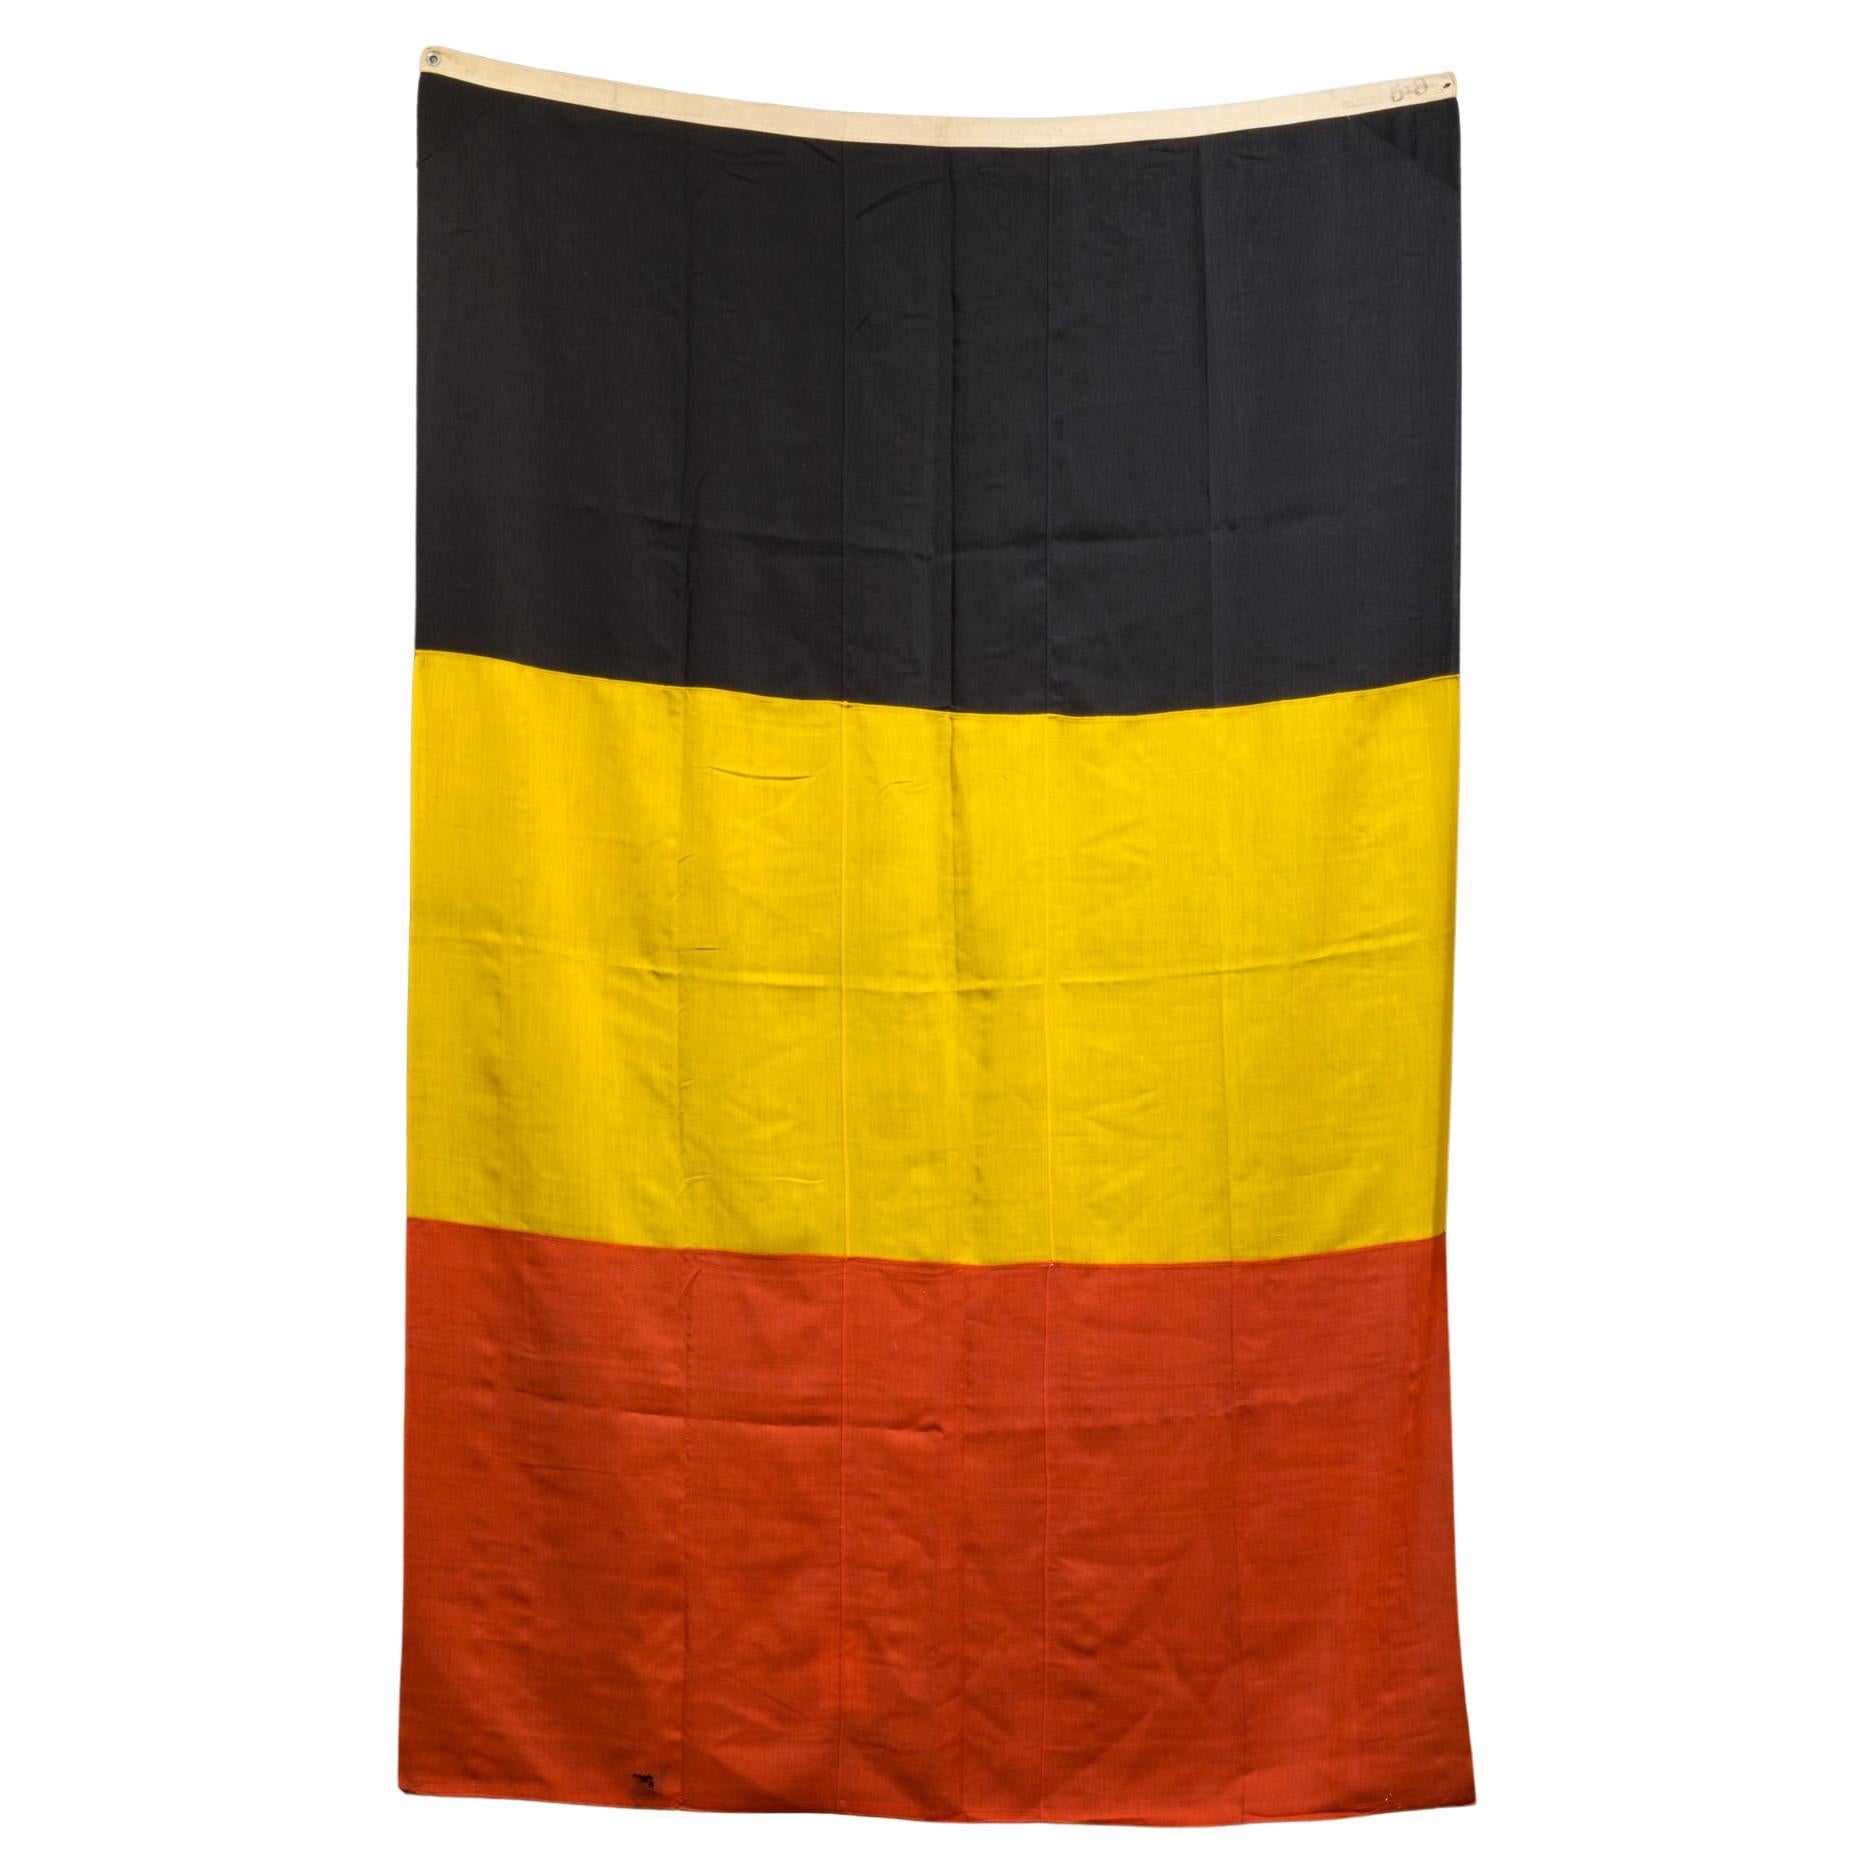 A.I.C., début du 20e siècle. Monumental Belgian Flag c.1940-1950-FREE SHIPPING